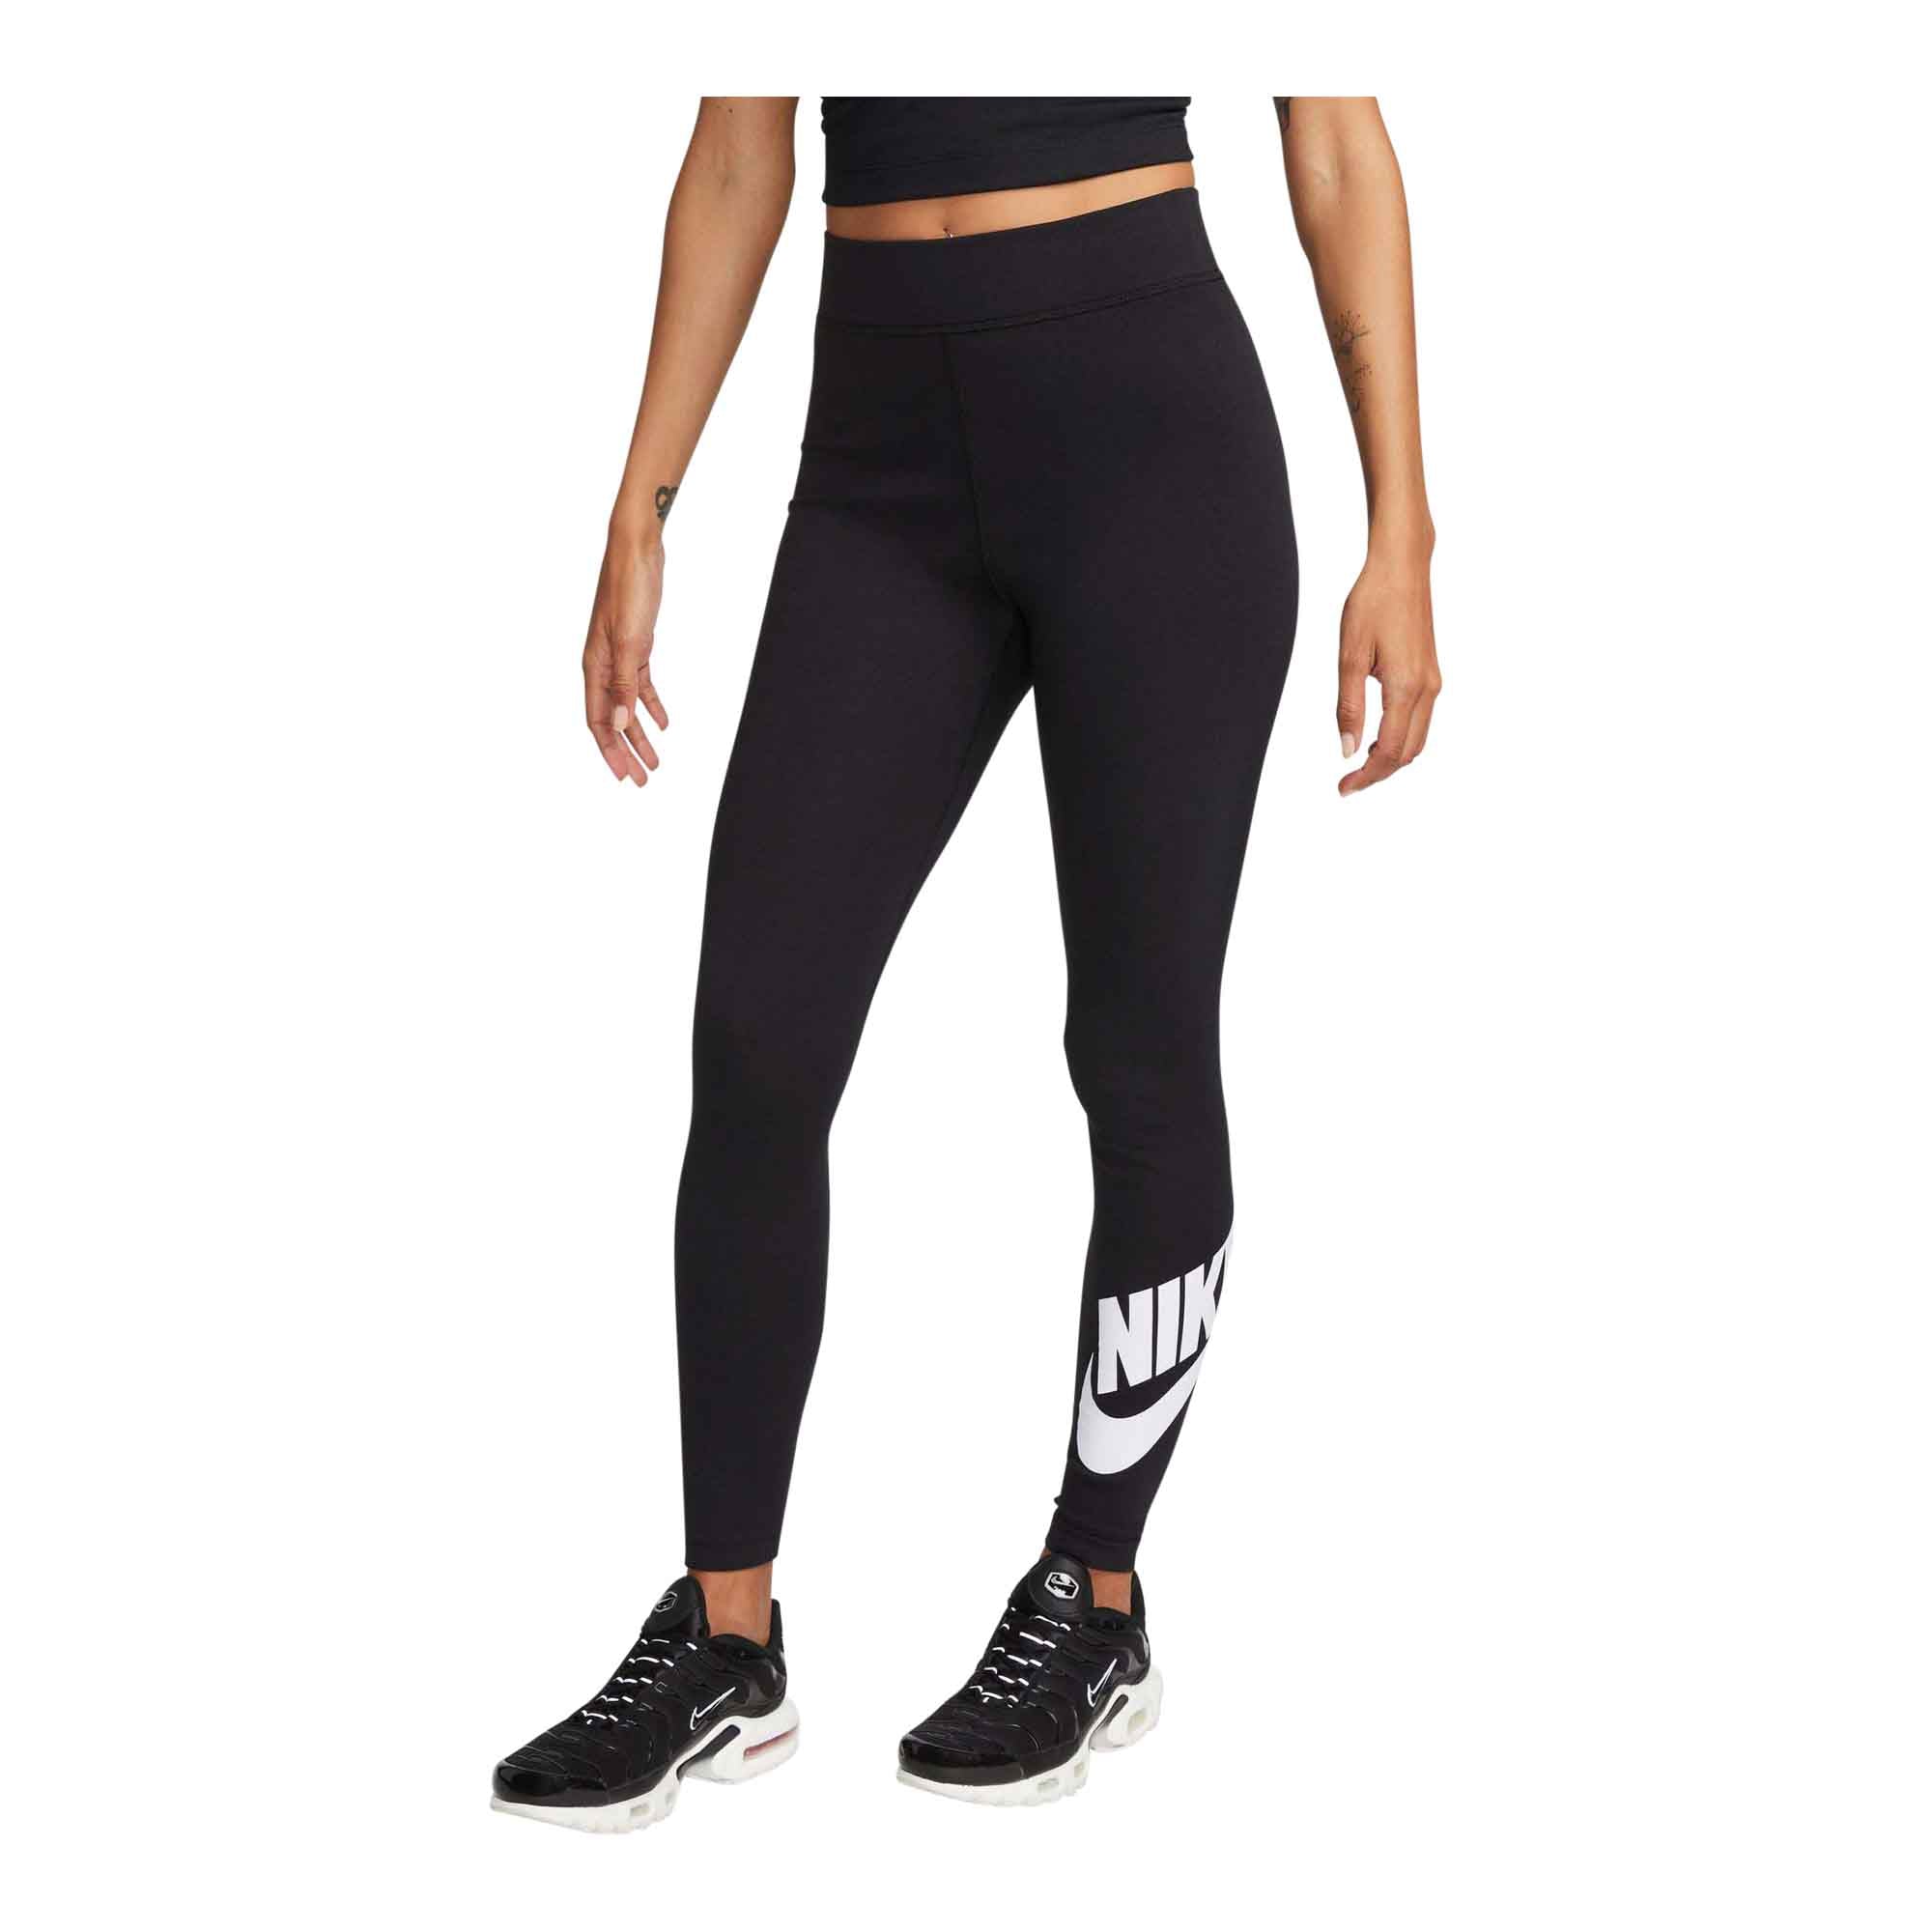 Nike Pro Women's Mid-Rise Mesh-Paneled Leggings.